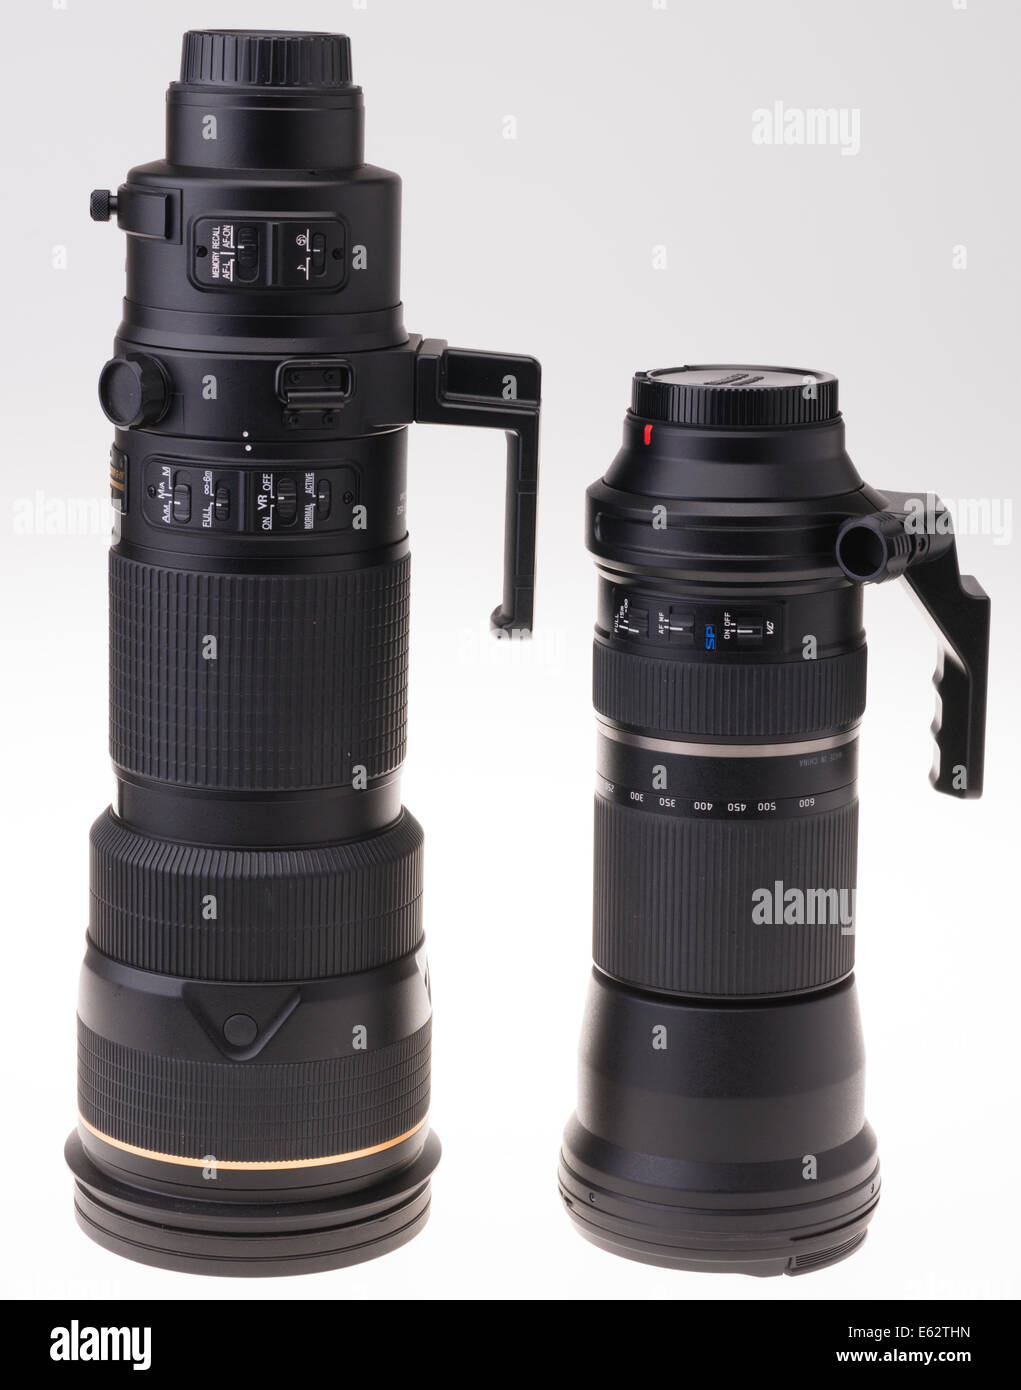 Fotocamera reflex digitale obiettivo zoom design. Nikon 200-400mm e Tamron 150-600mm zoom fianco a fianco. Foto Stock